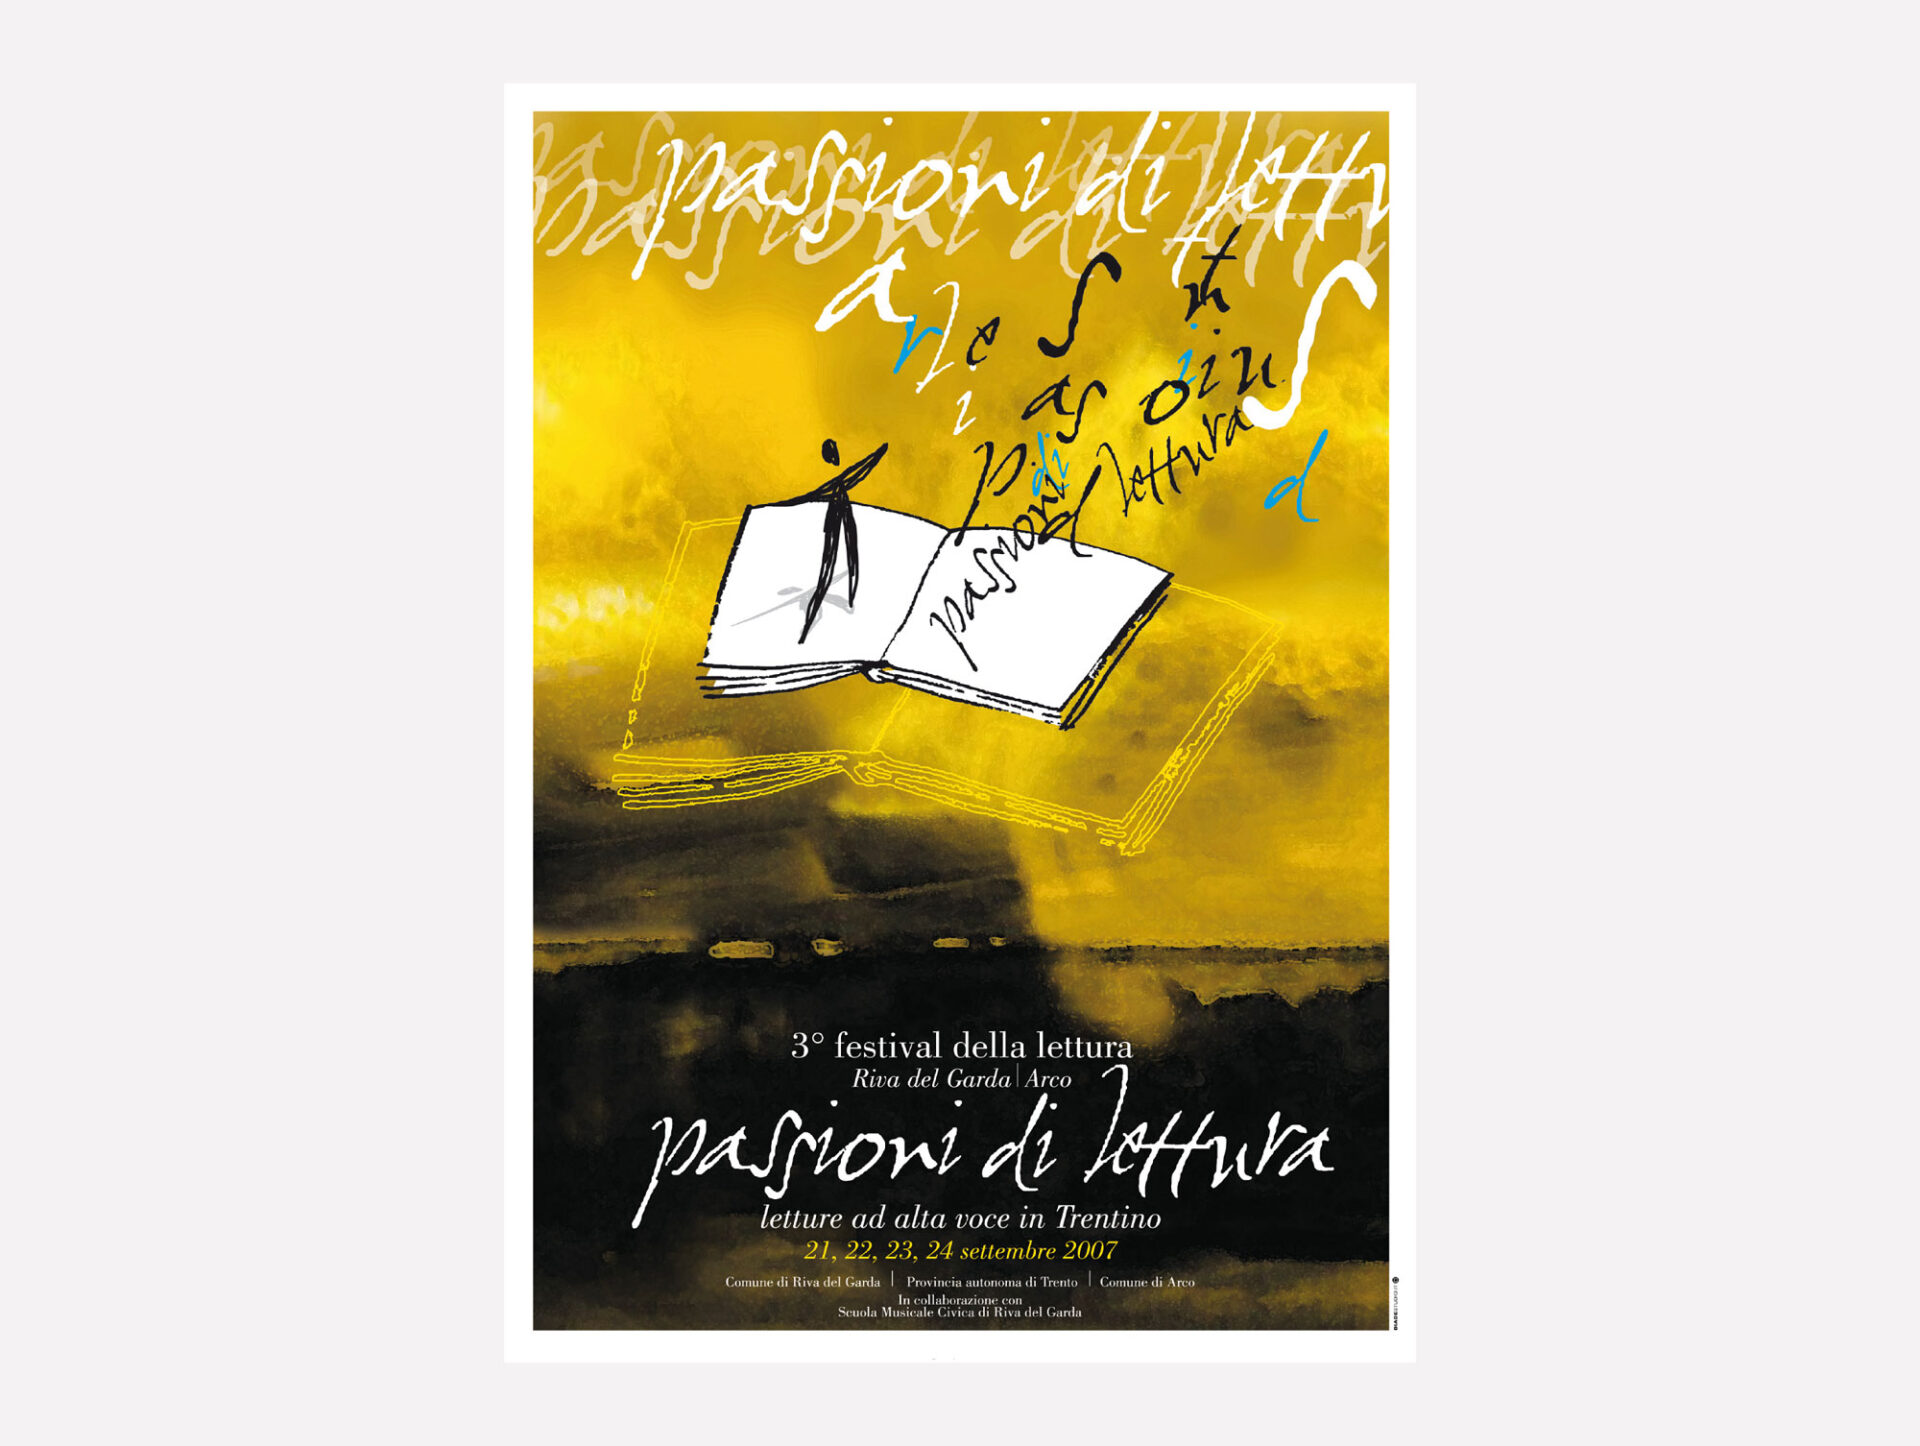 illustrazione per manifesto ad acquerello e tecnica mista creato per manifestazione festival della lettura da diadestudio agenzia grafica di arco trento rovereto